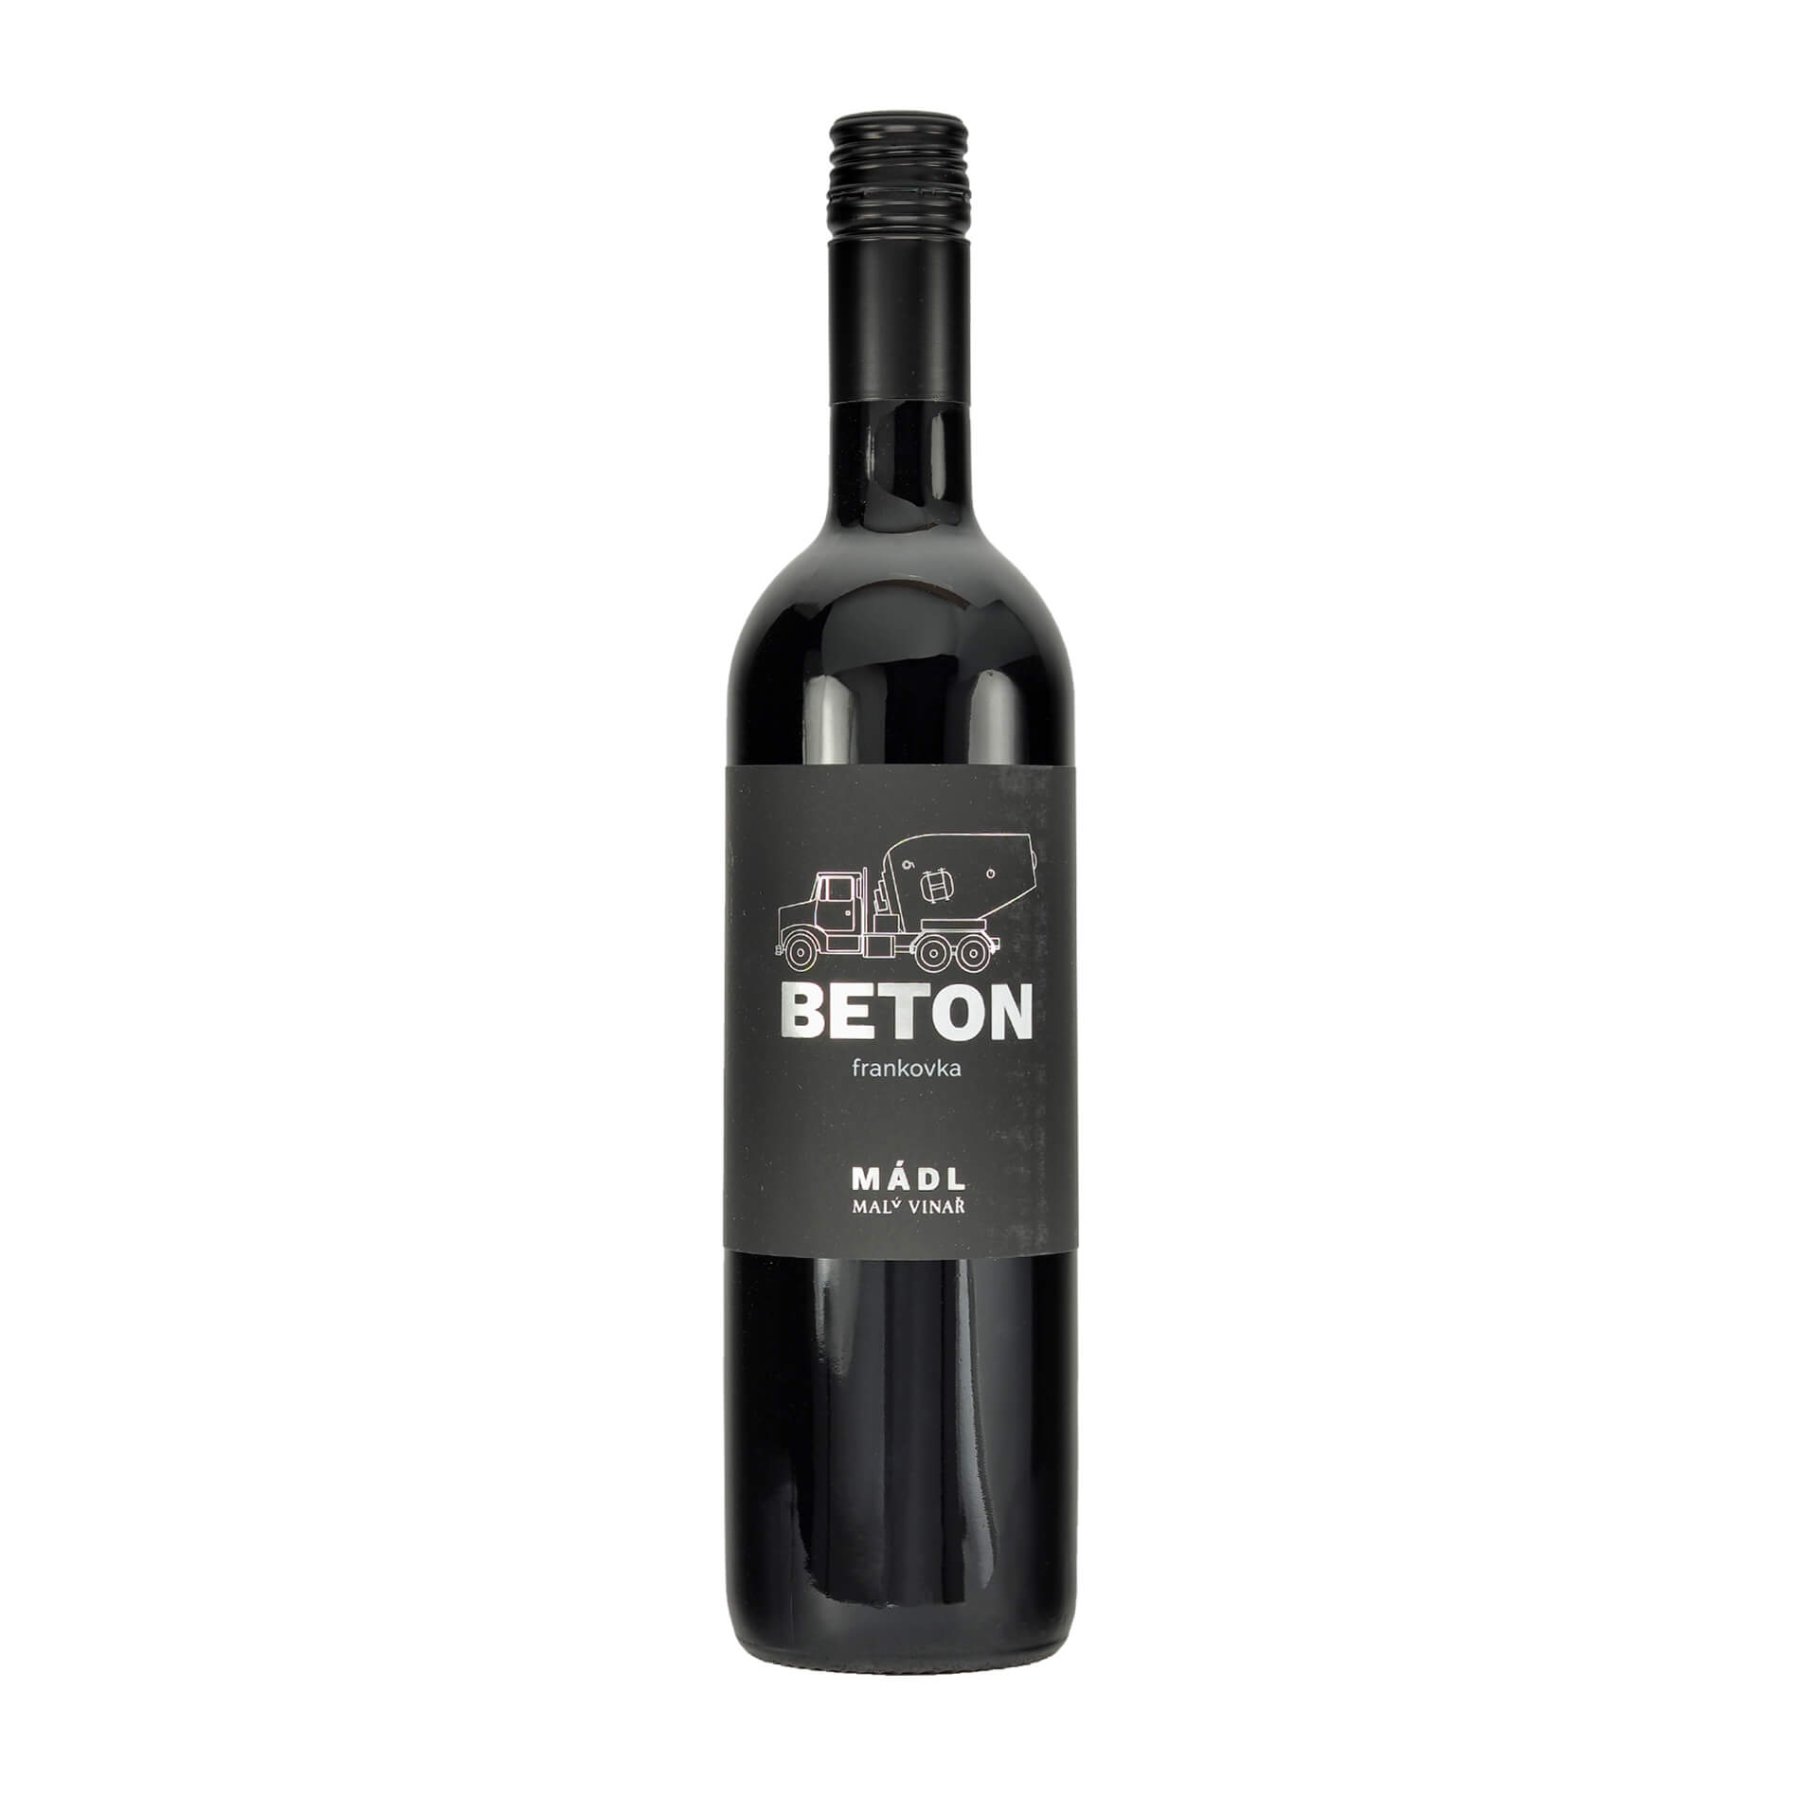 Frankovka 2021 BETON moravské zemské víno MÁDL suché š. 2133